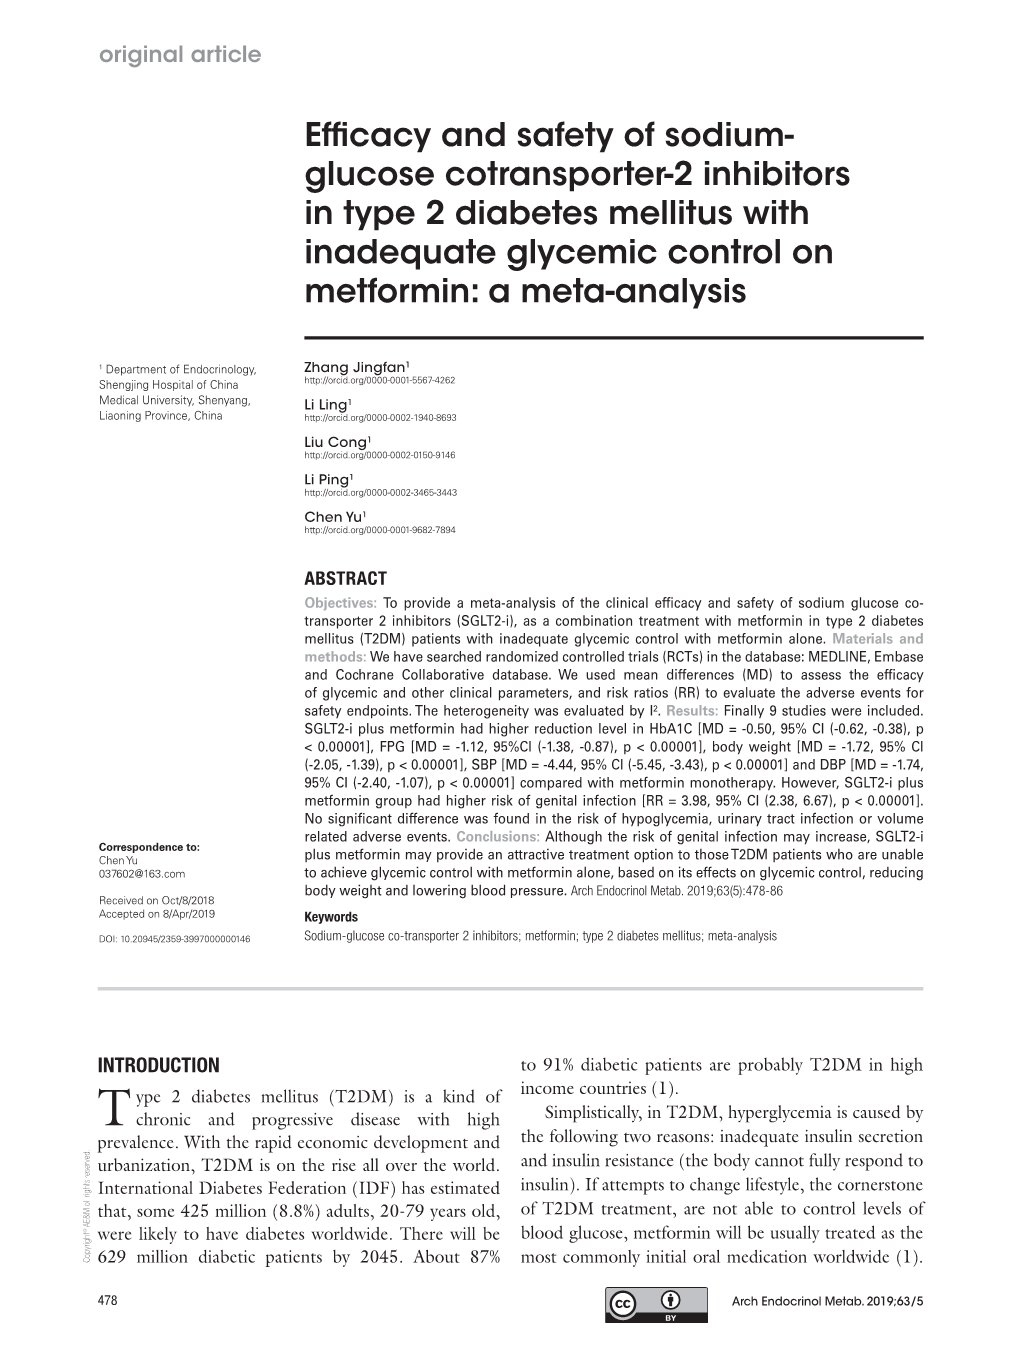 Glucose Cotransporter-2 Inhibitors in Type 2 Diabetes Mellitus